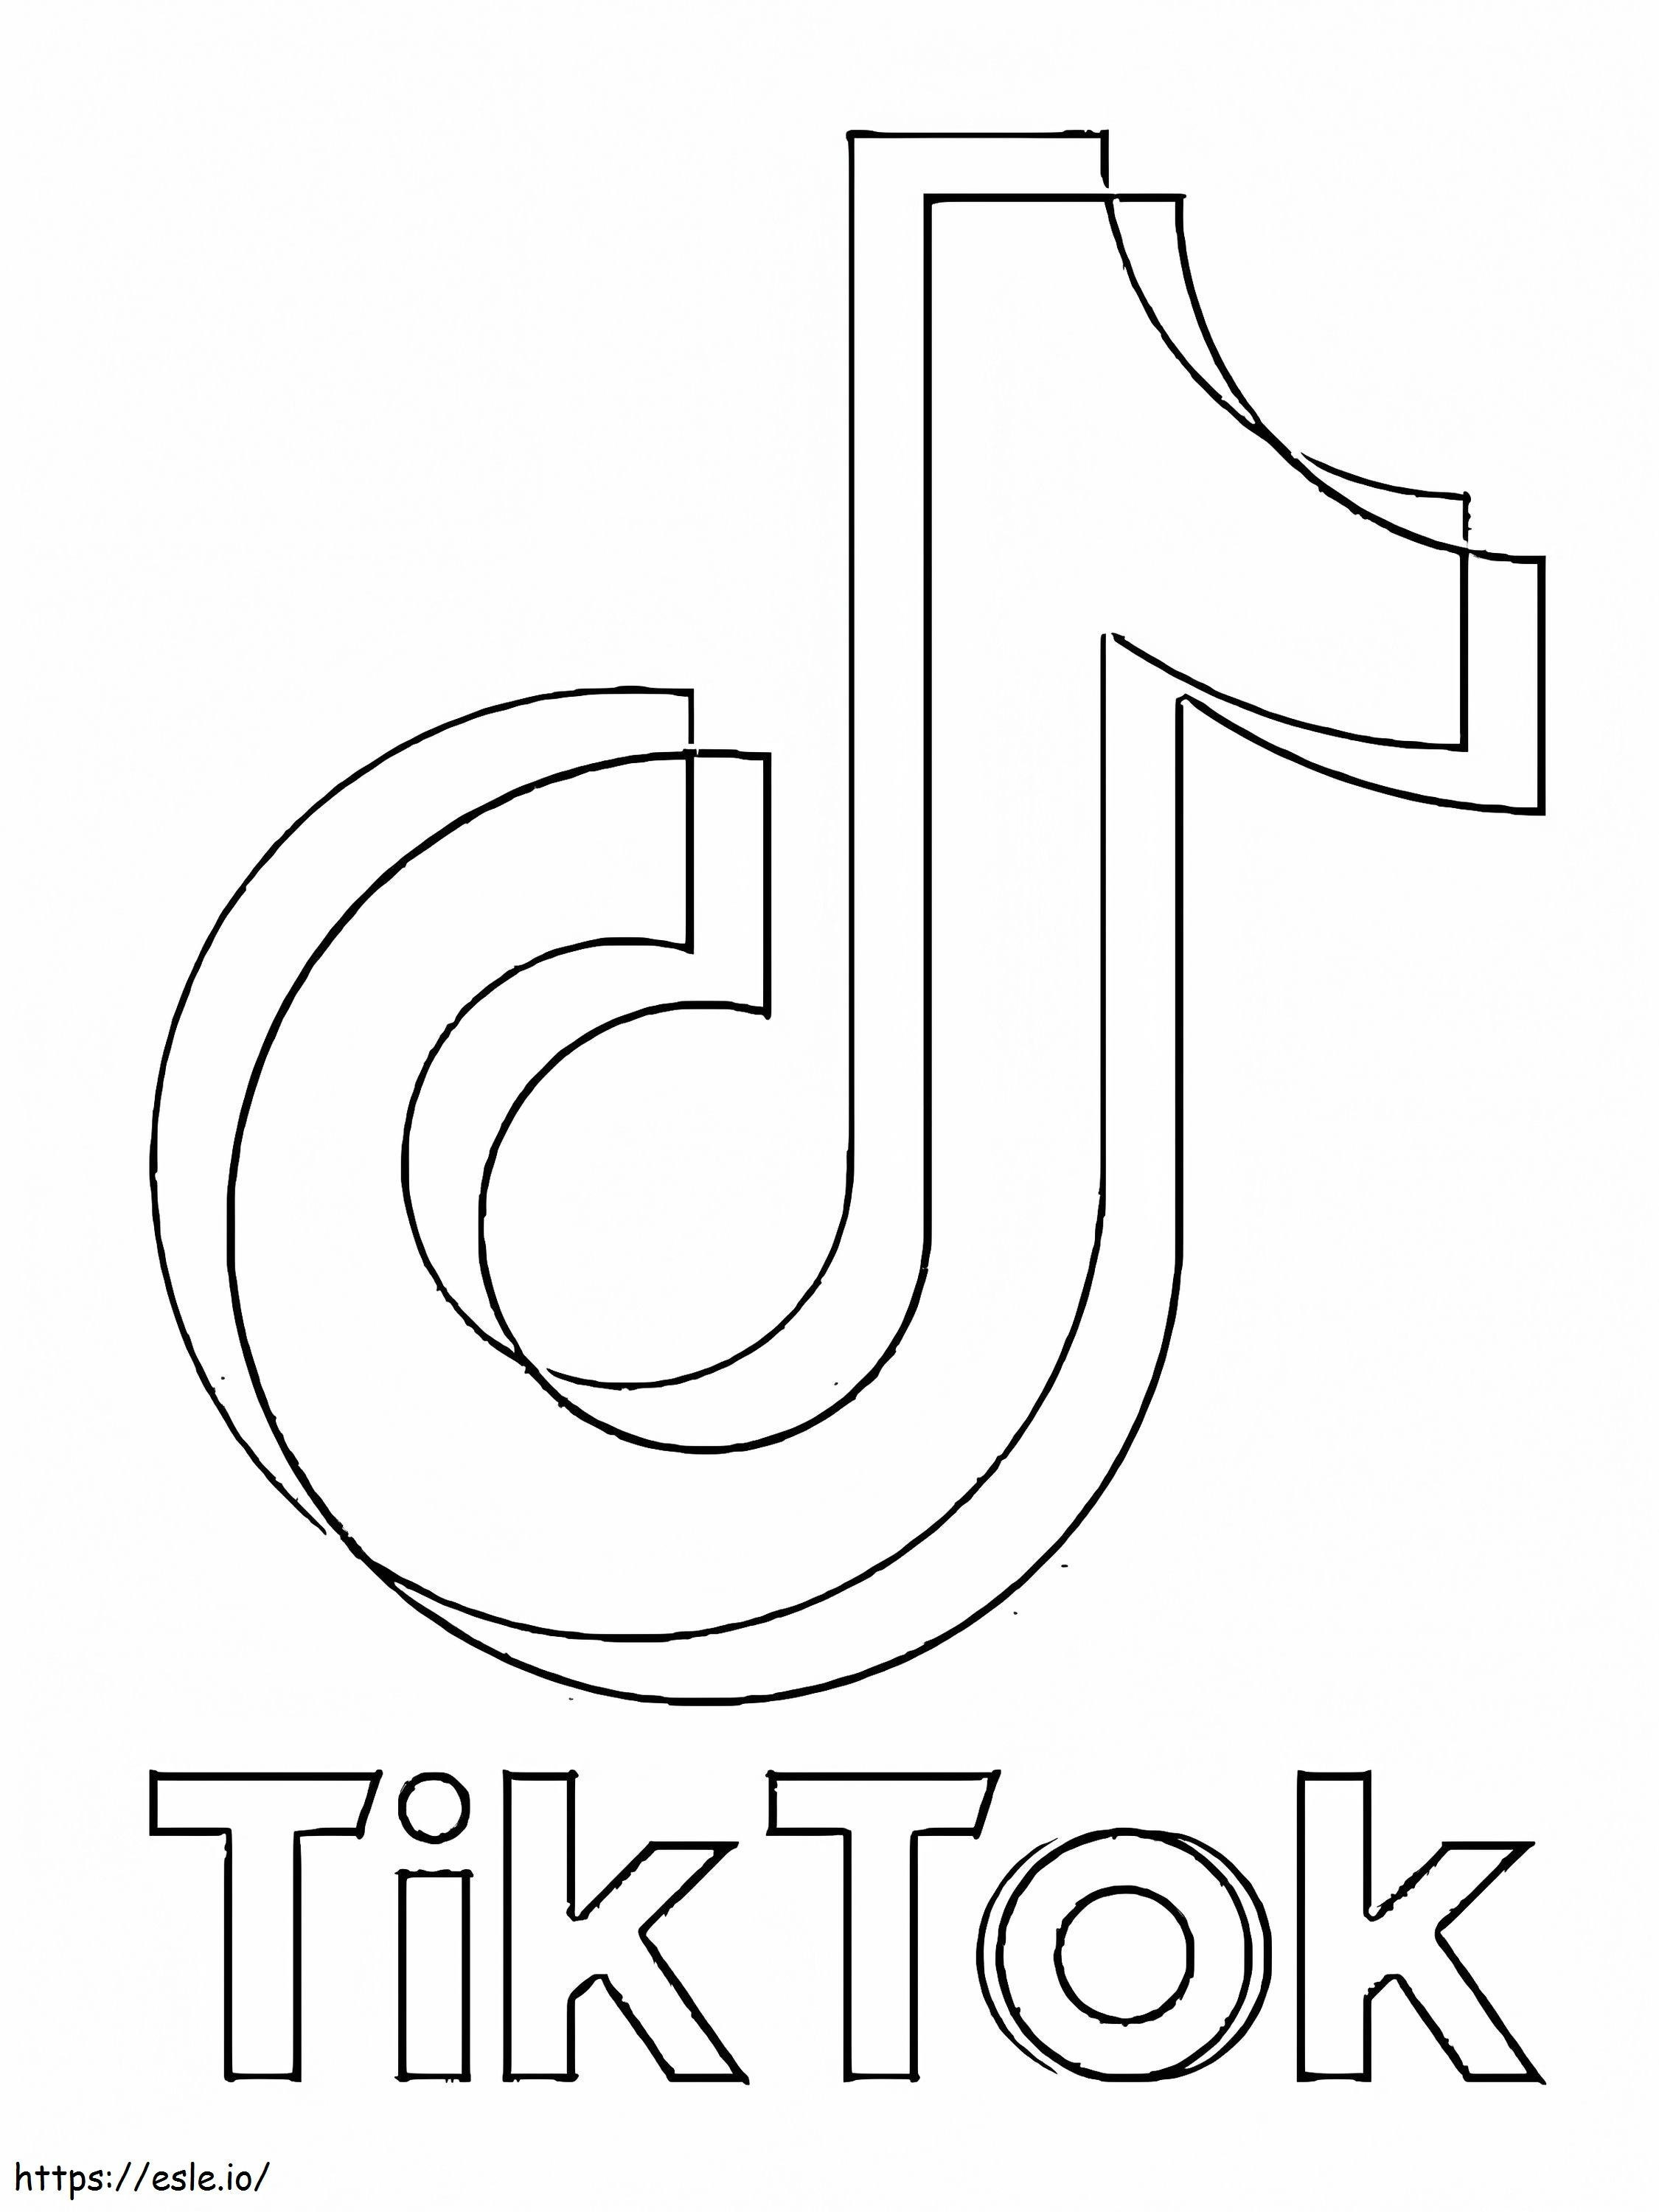 Logotipo do TikTok para colorir